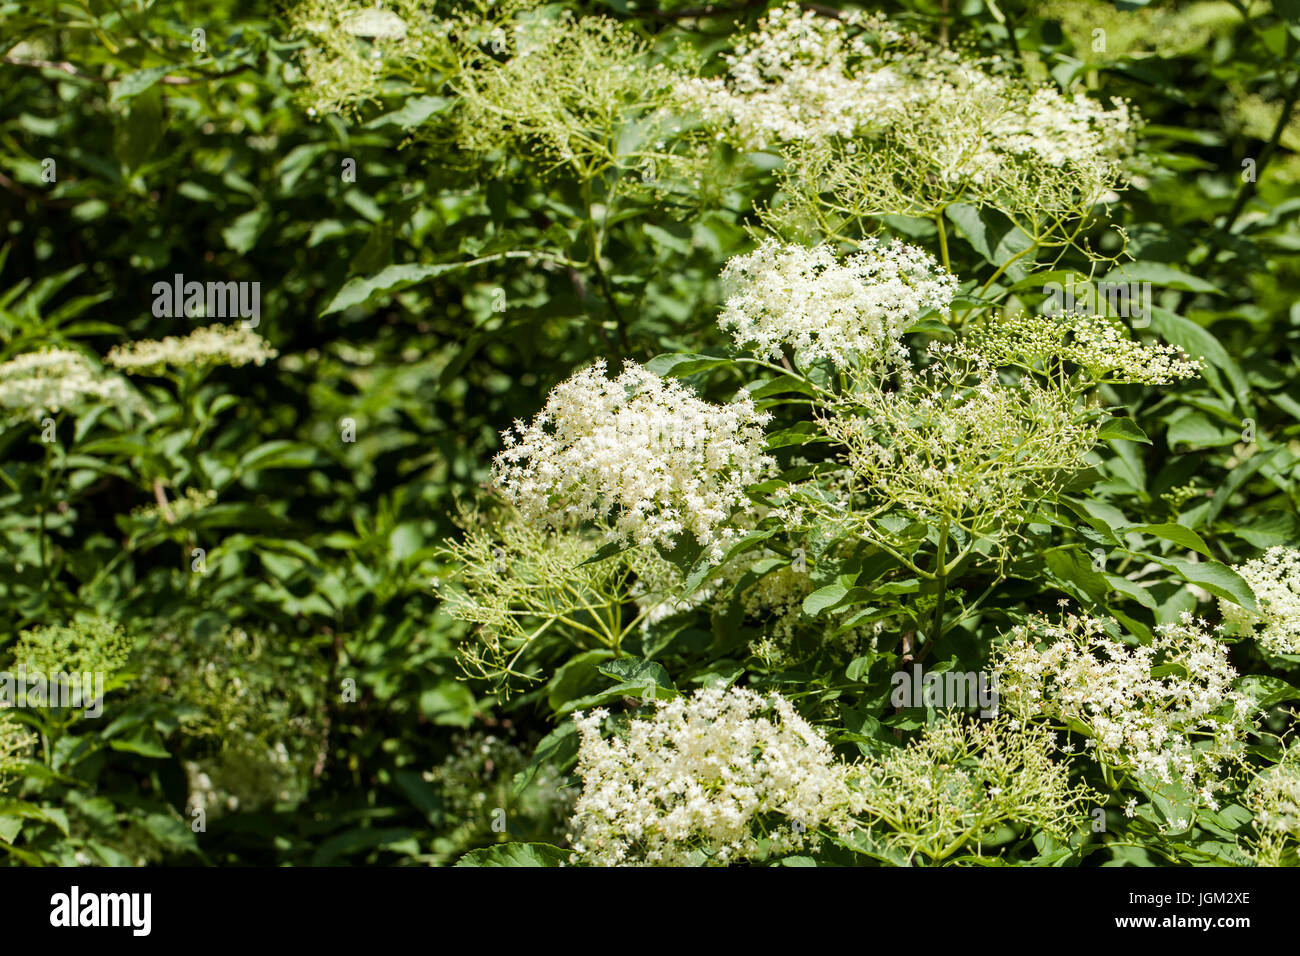 Sambucus è un genere di piante in fiore nella famiglia adoxaceae. Le varie specie sono comunemente chiamati sambuco o il sambuco. Foto Stock